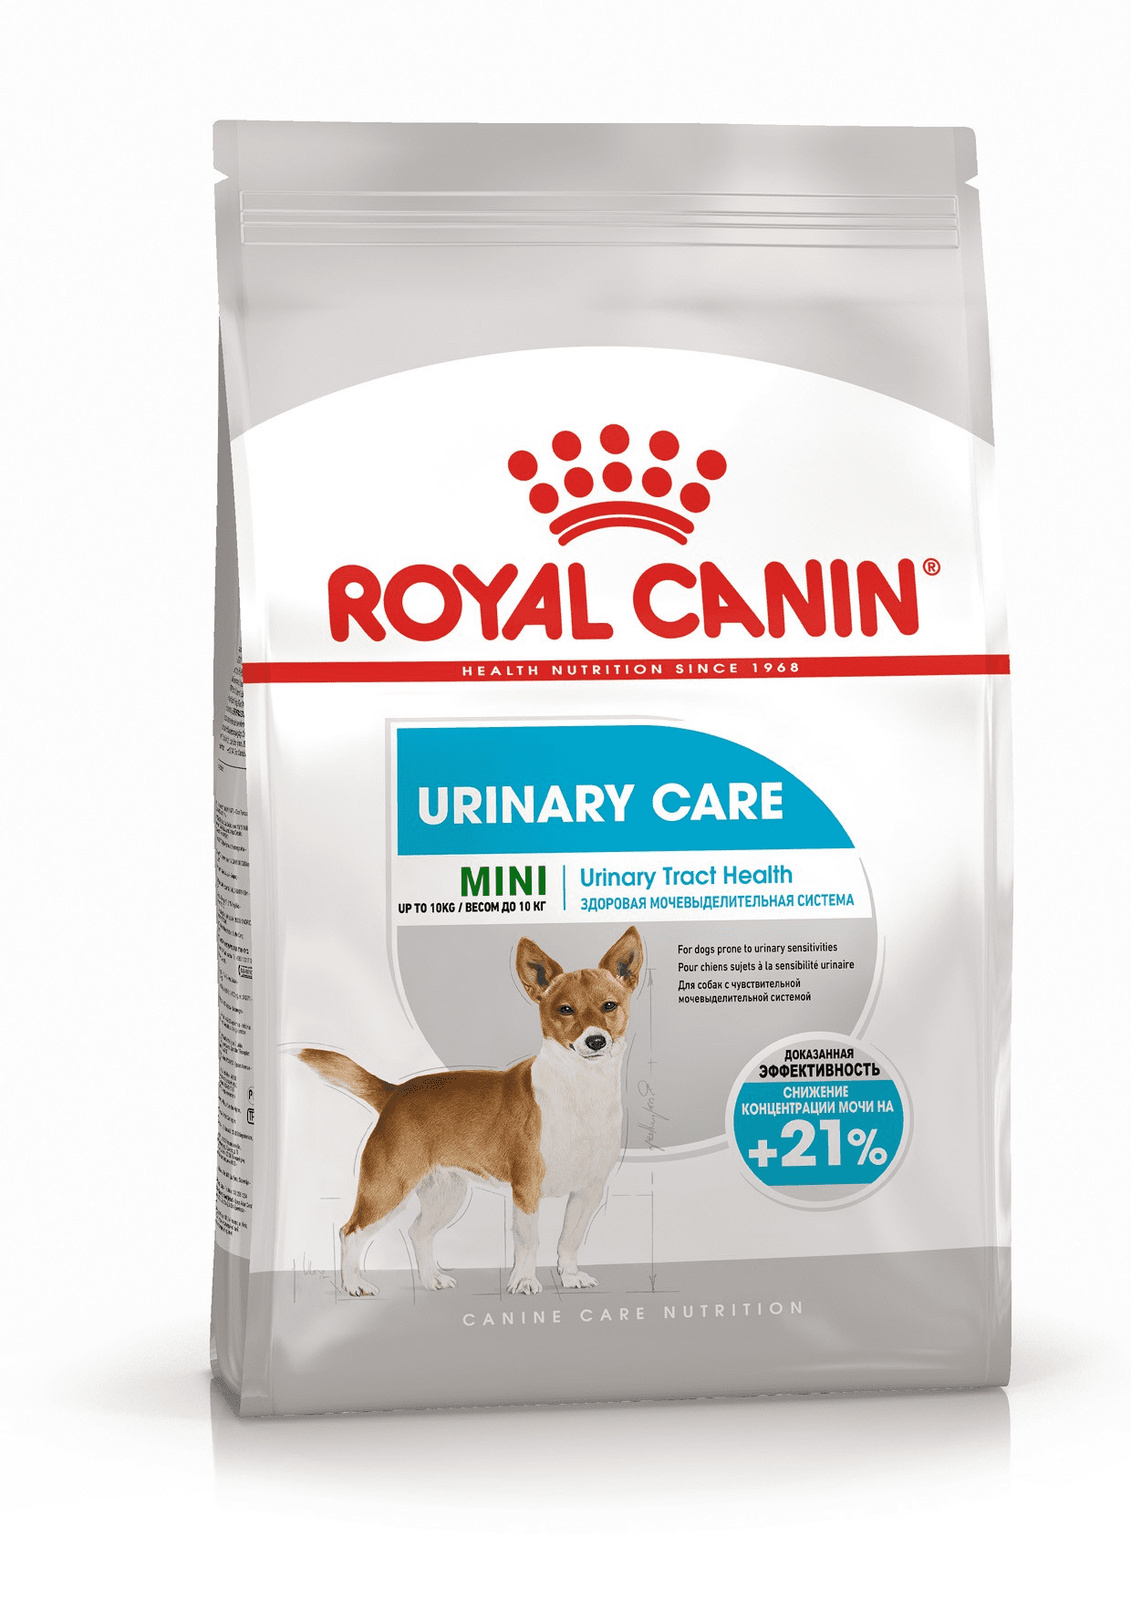 Royal Canin Корм Royal Canin для собак малых пород с чувствительной мочевыделительной системой (1 кг) royal canin mini urinary care полнорацмонный сухой корм для взрослых собак мелких пород с чувствительной мочевыделительной системой 1 кг